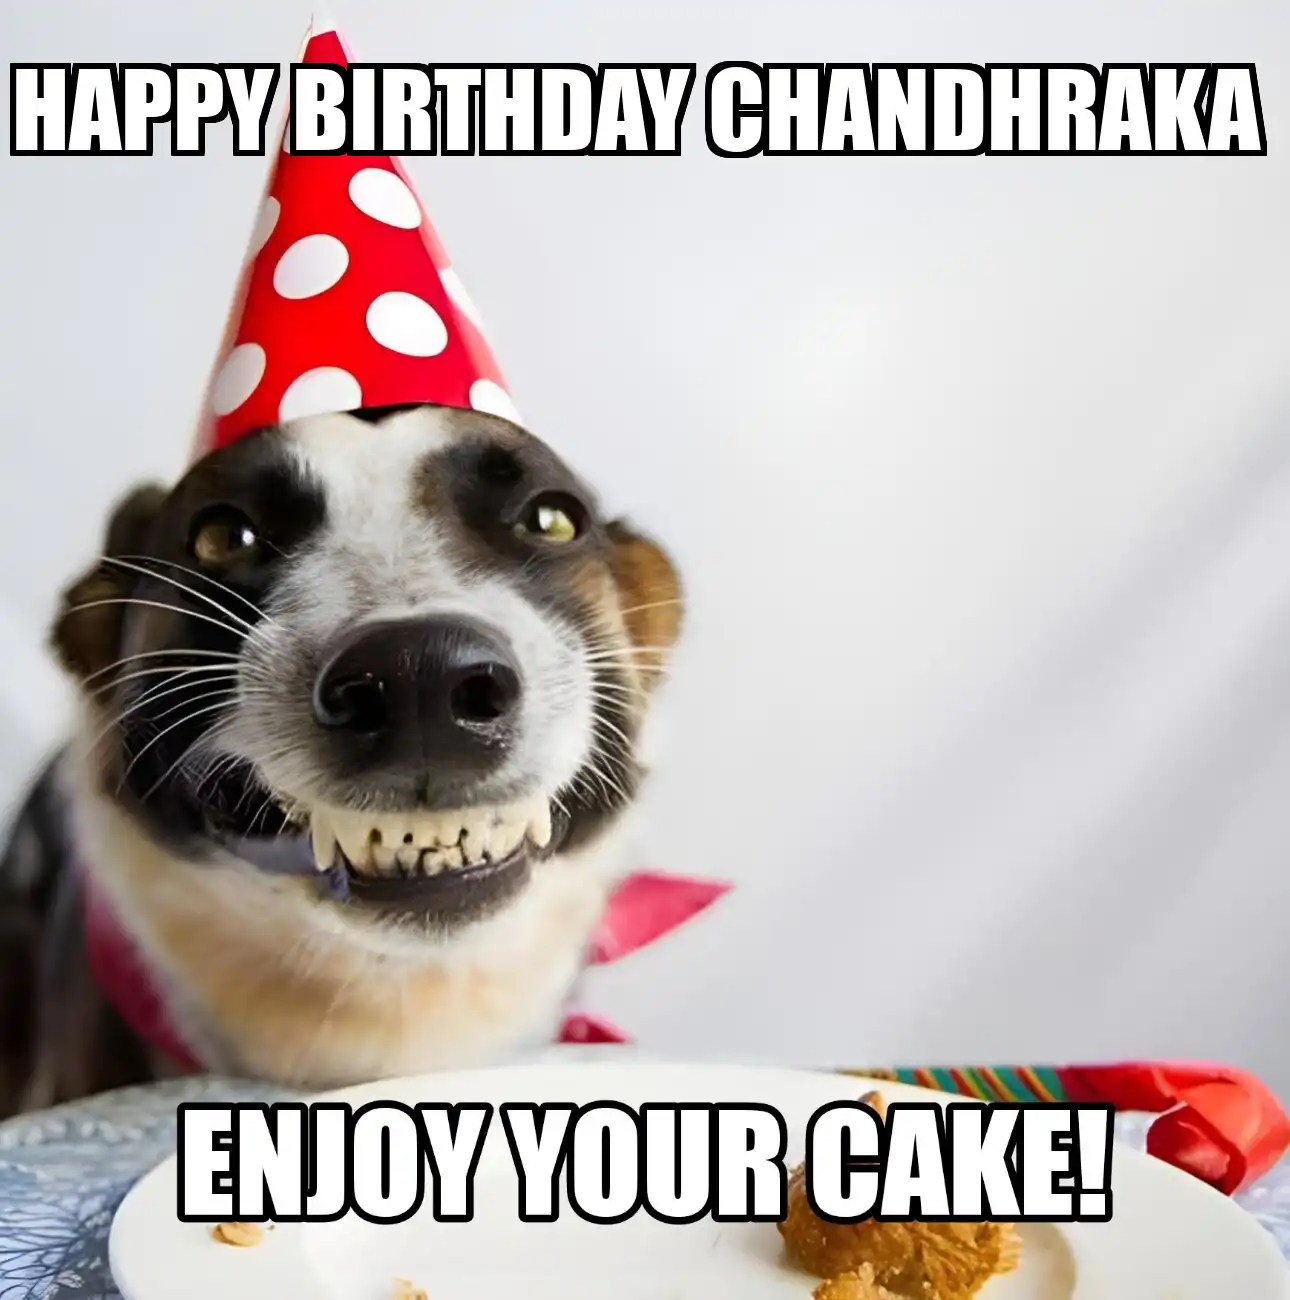 Happy Birthday Chandhraka Enjoy Your Cake Dog Meme